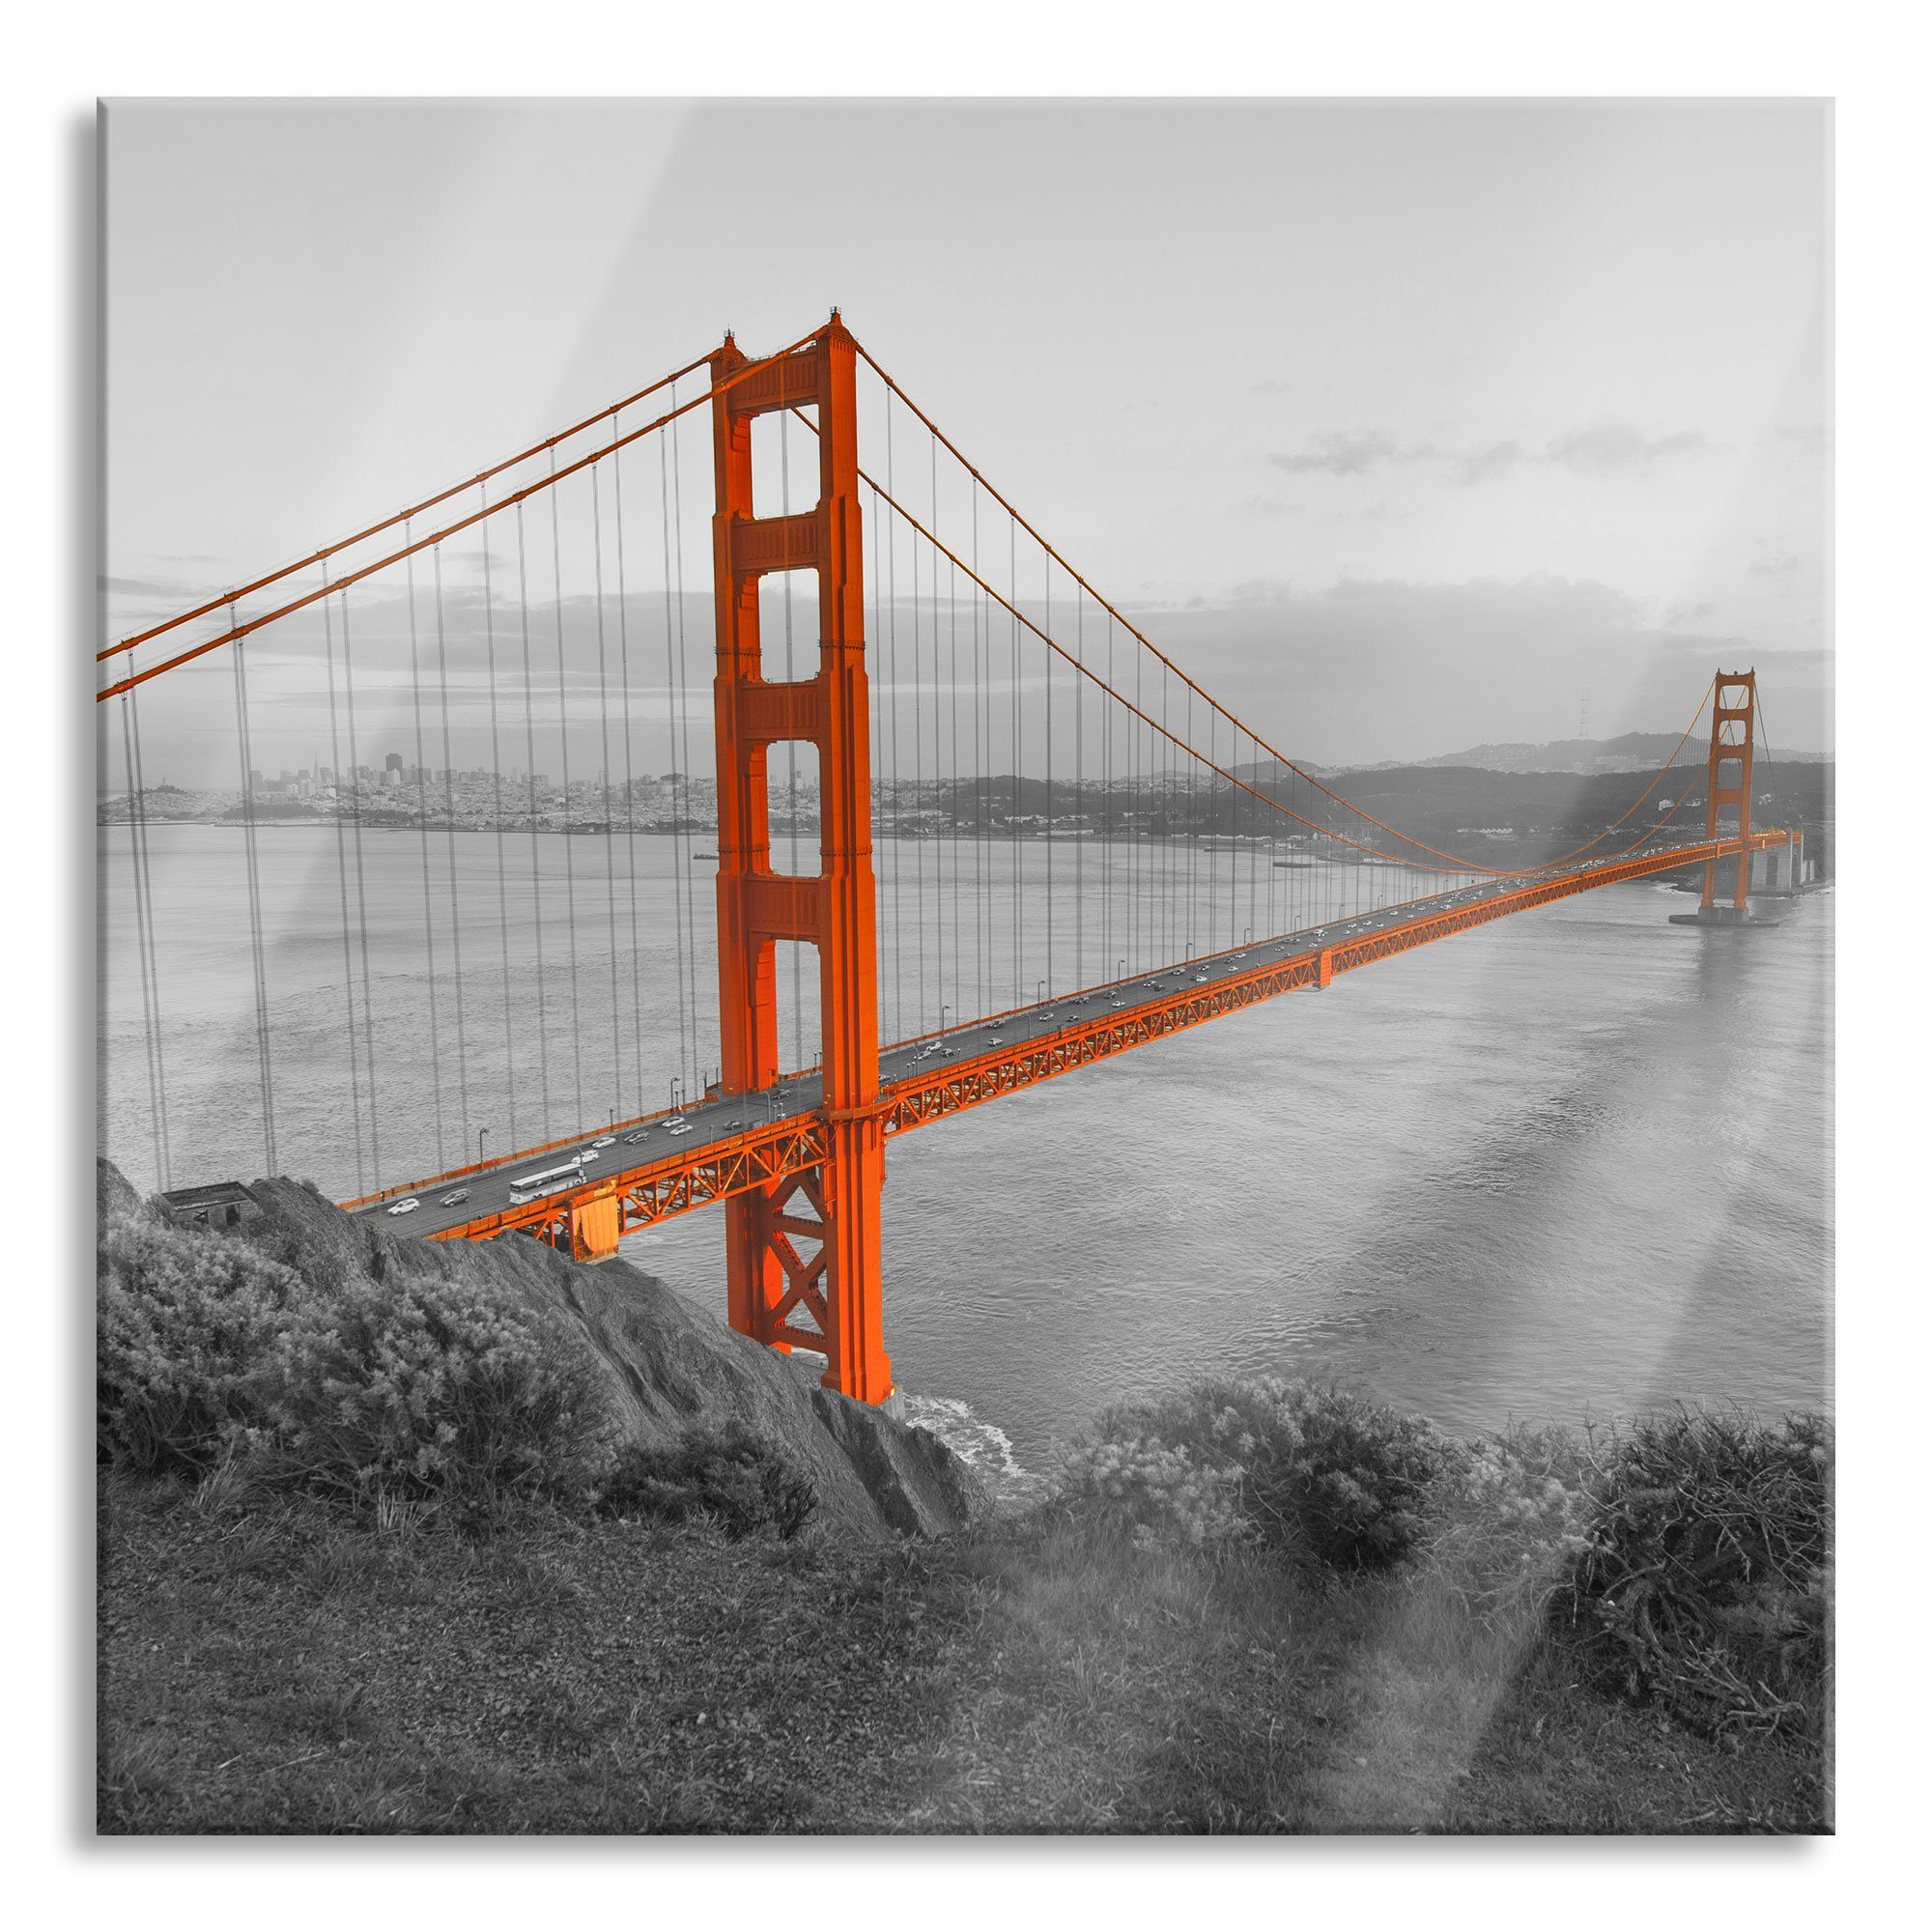 Pixxprint Glasbild Golden Gate Bridge San Francisco, Golden Gate Bridge San Francisco (1 St), Glasbild aus Echtglas, inkl. Aufhängungen und Abstandshalter